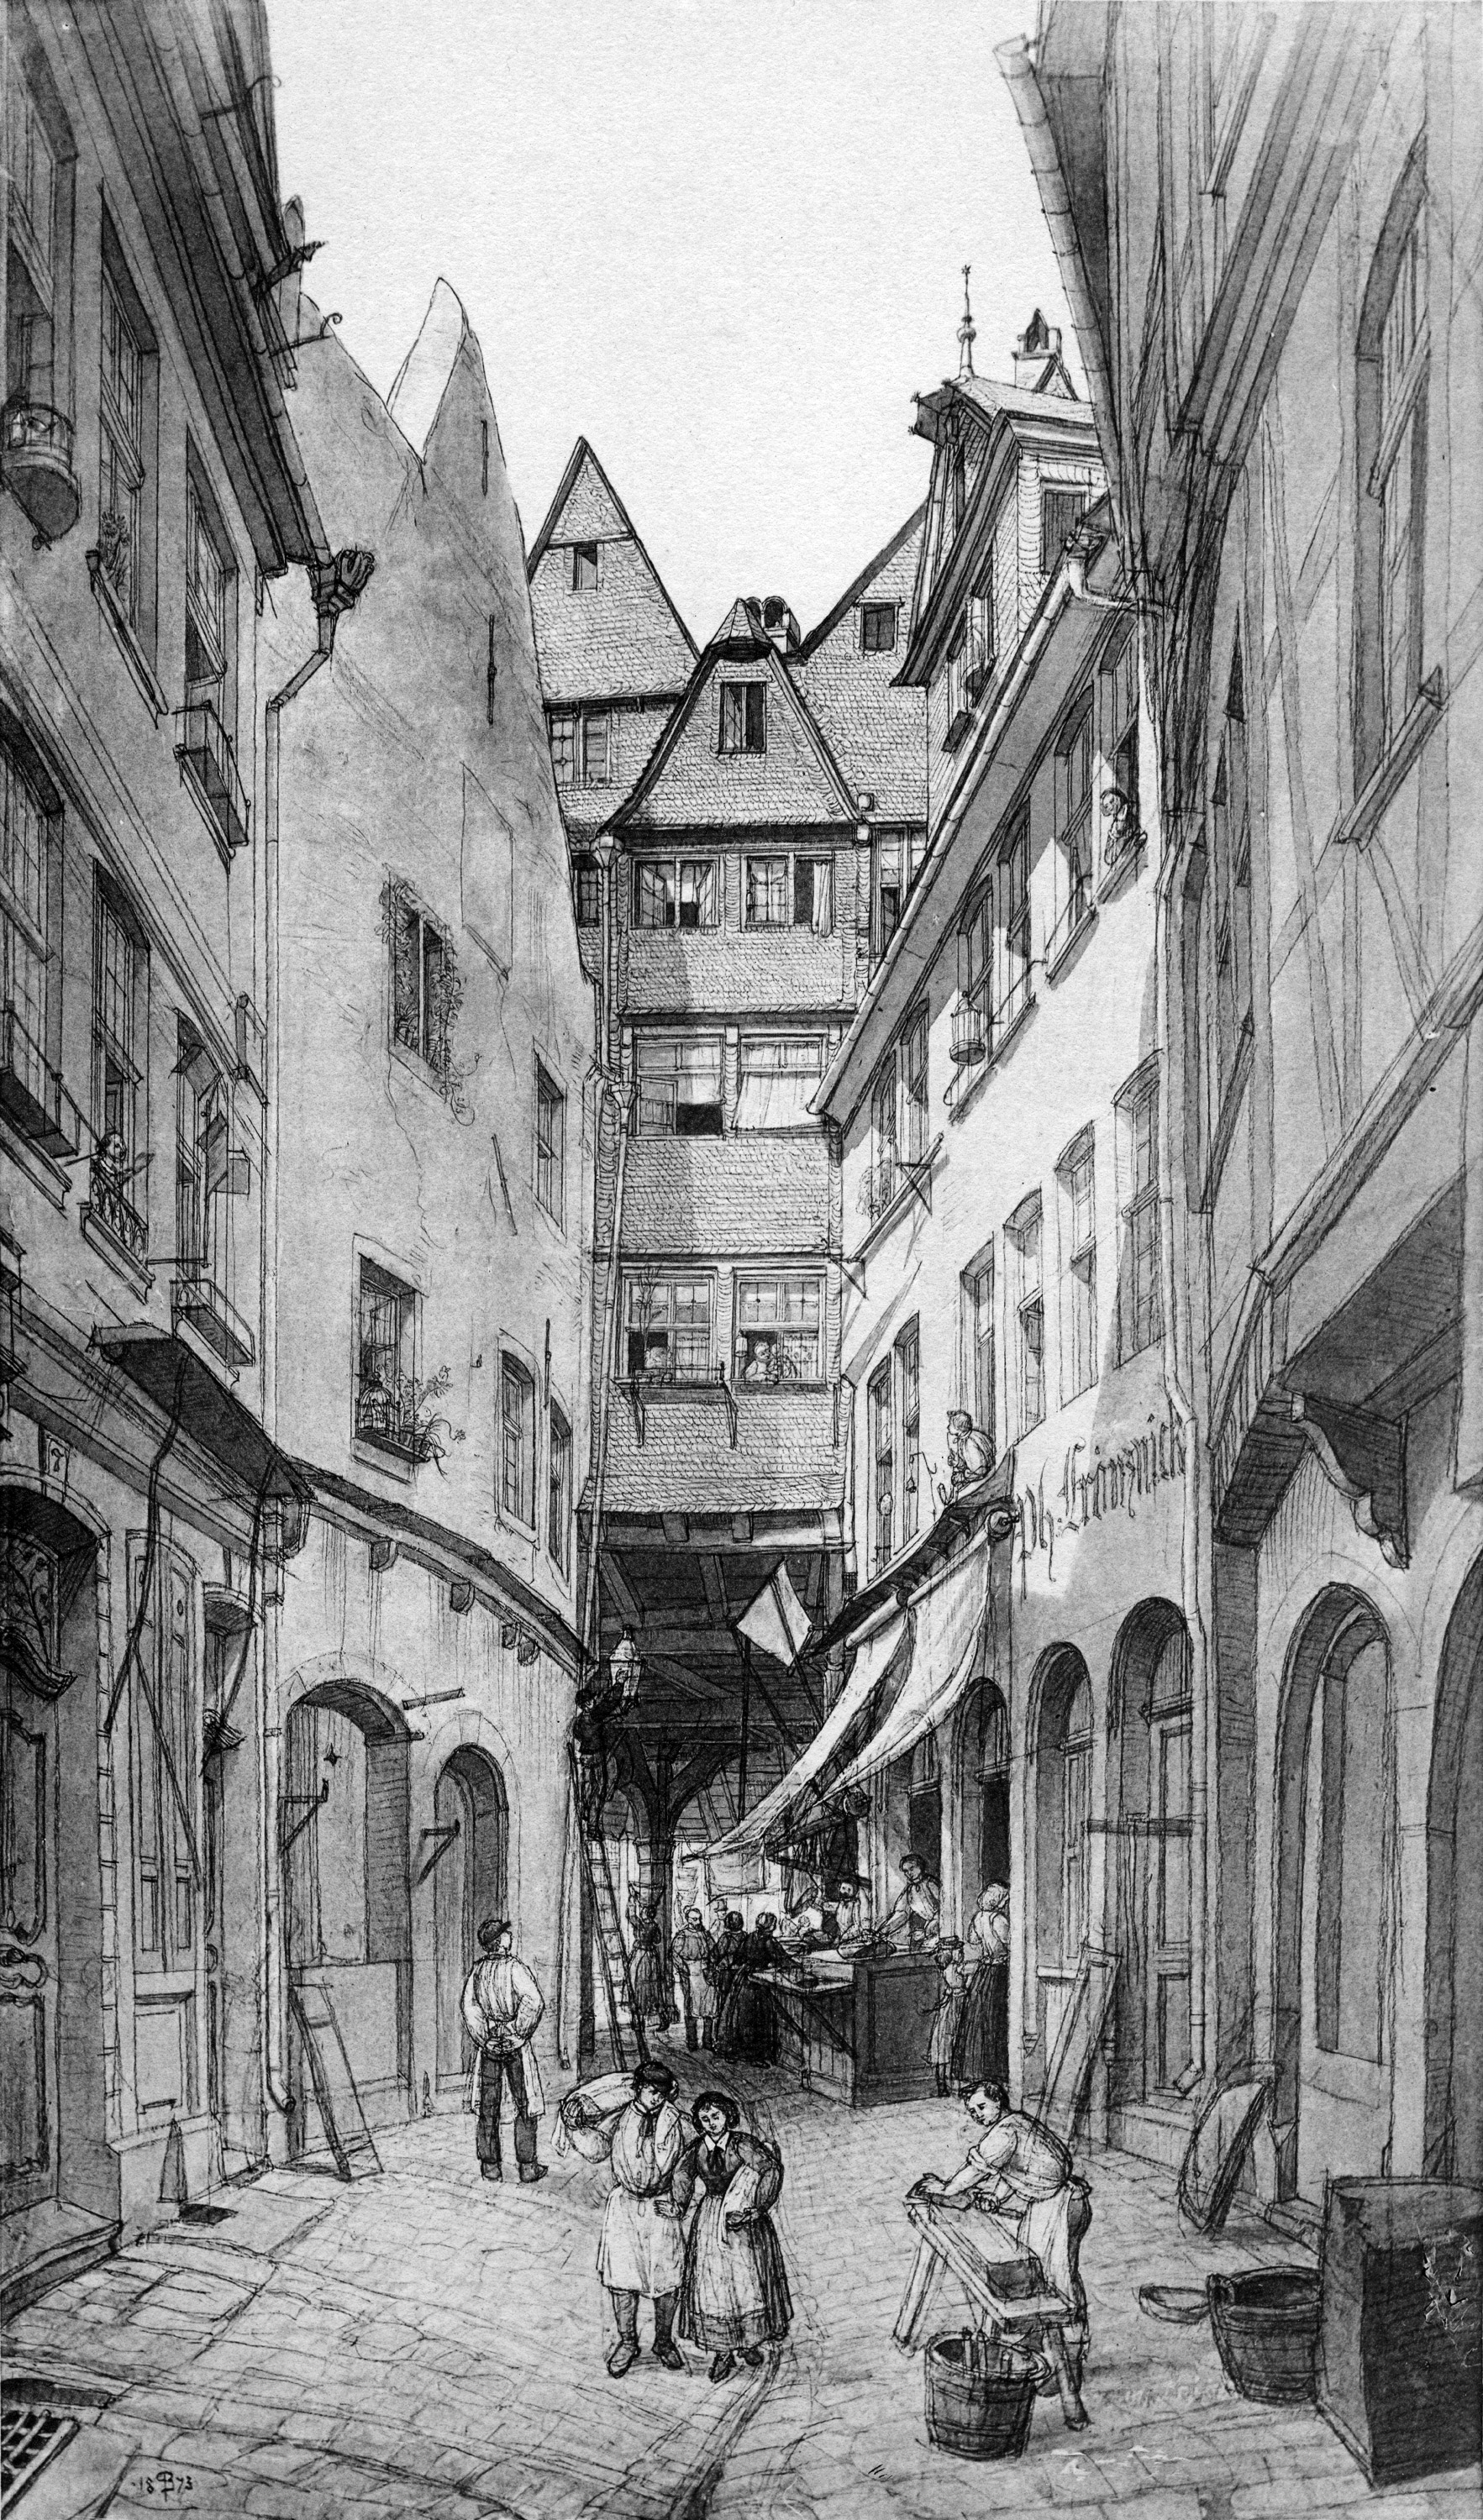 Frankfurt Am Main-Peter Becker-BAAF-005-Unter den Tuchgaden-1873